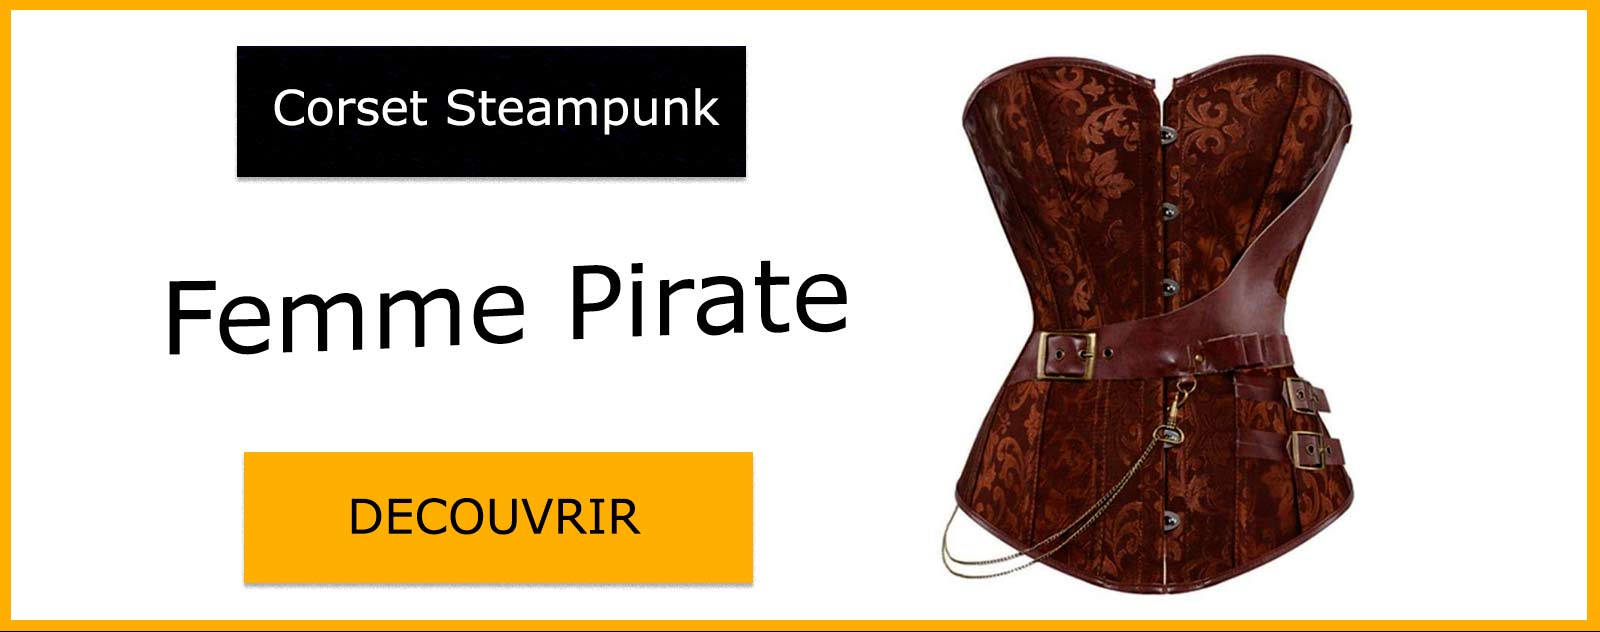 Corset Steampunk Femme Pirate